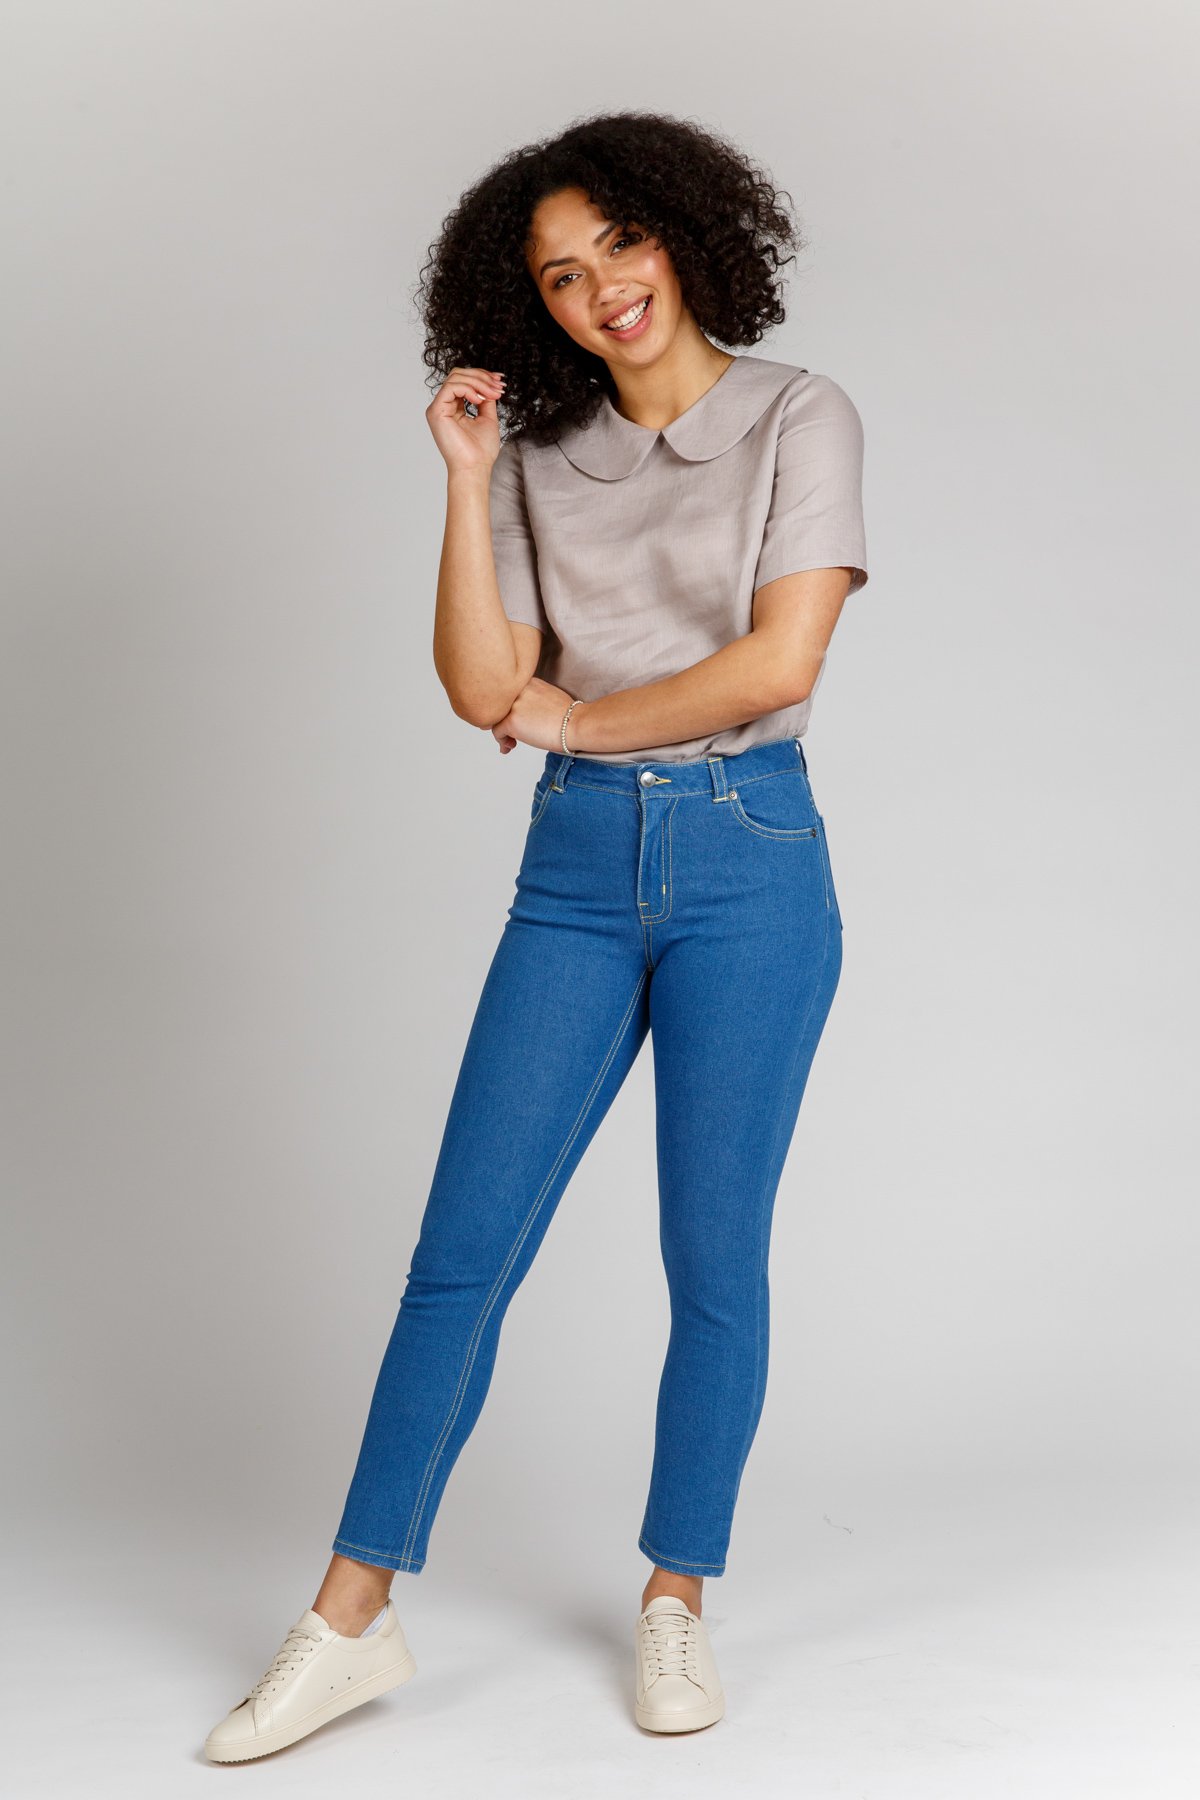 Megan Nielsen Ash Jeans | Harts Fabric